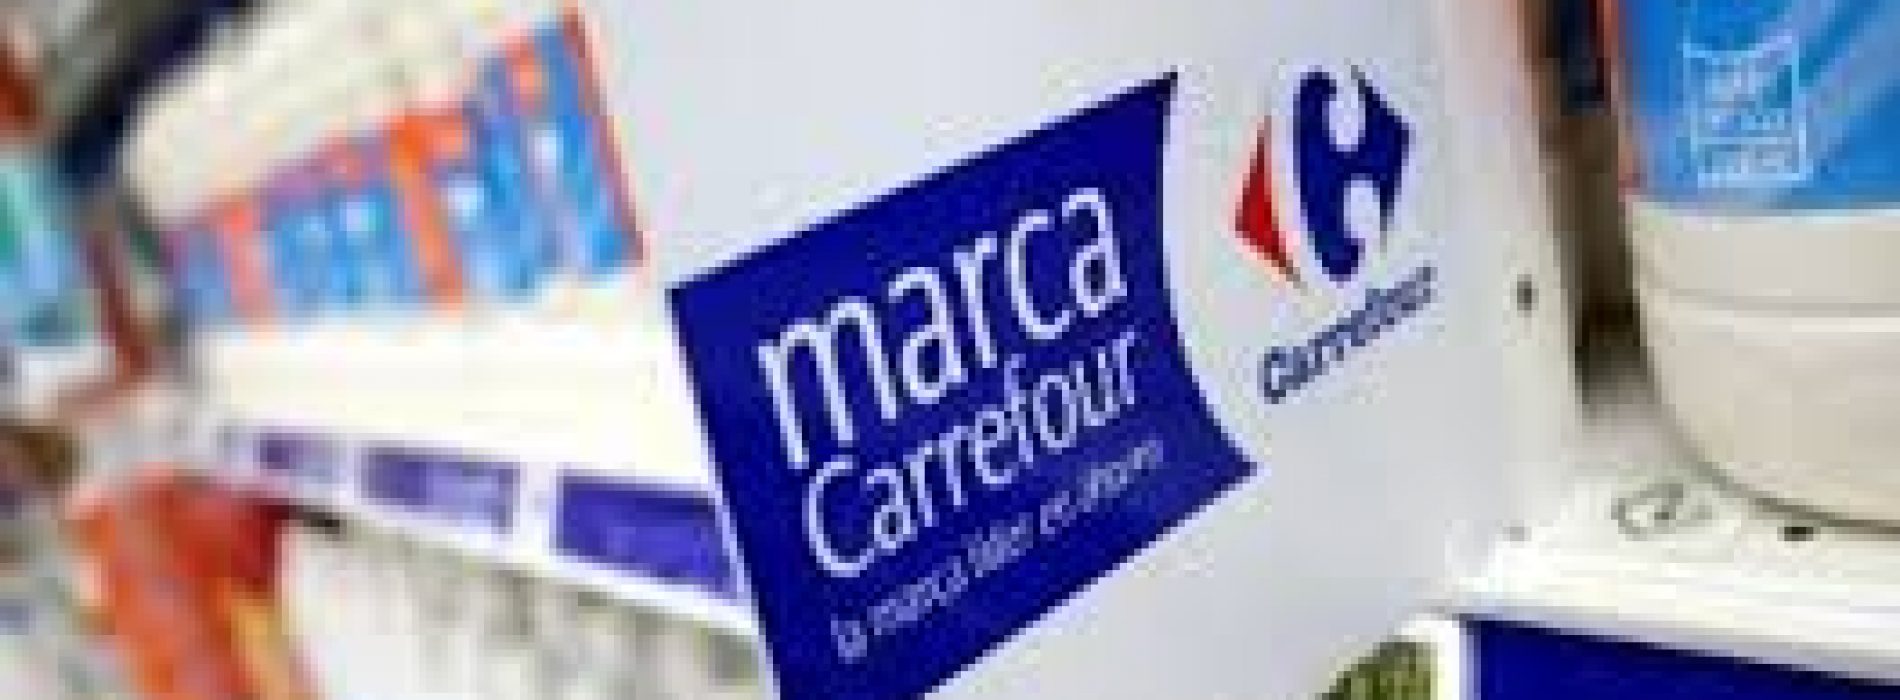 Carrefour Brasil registra lucro de R$ 389 milhões e quer intensificar marcas próprias